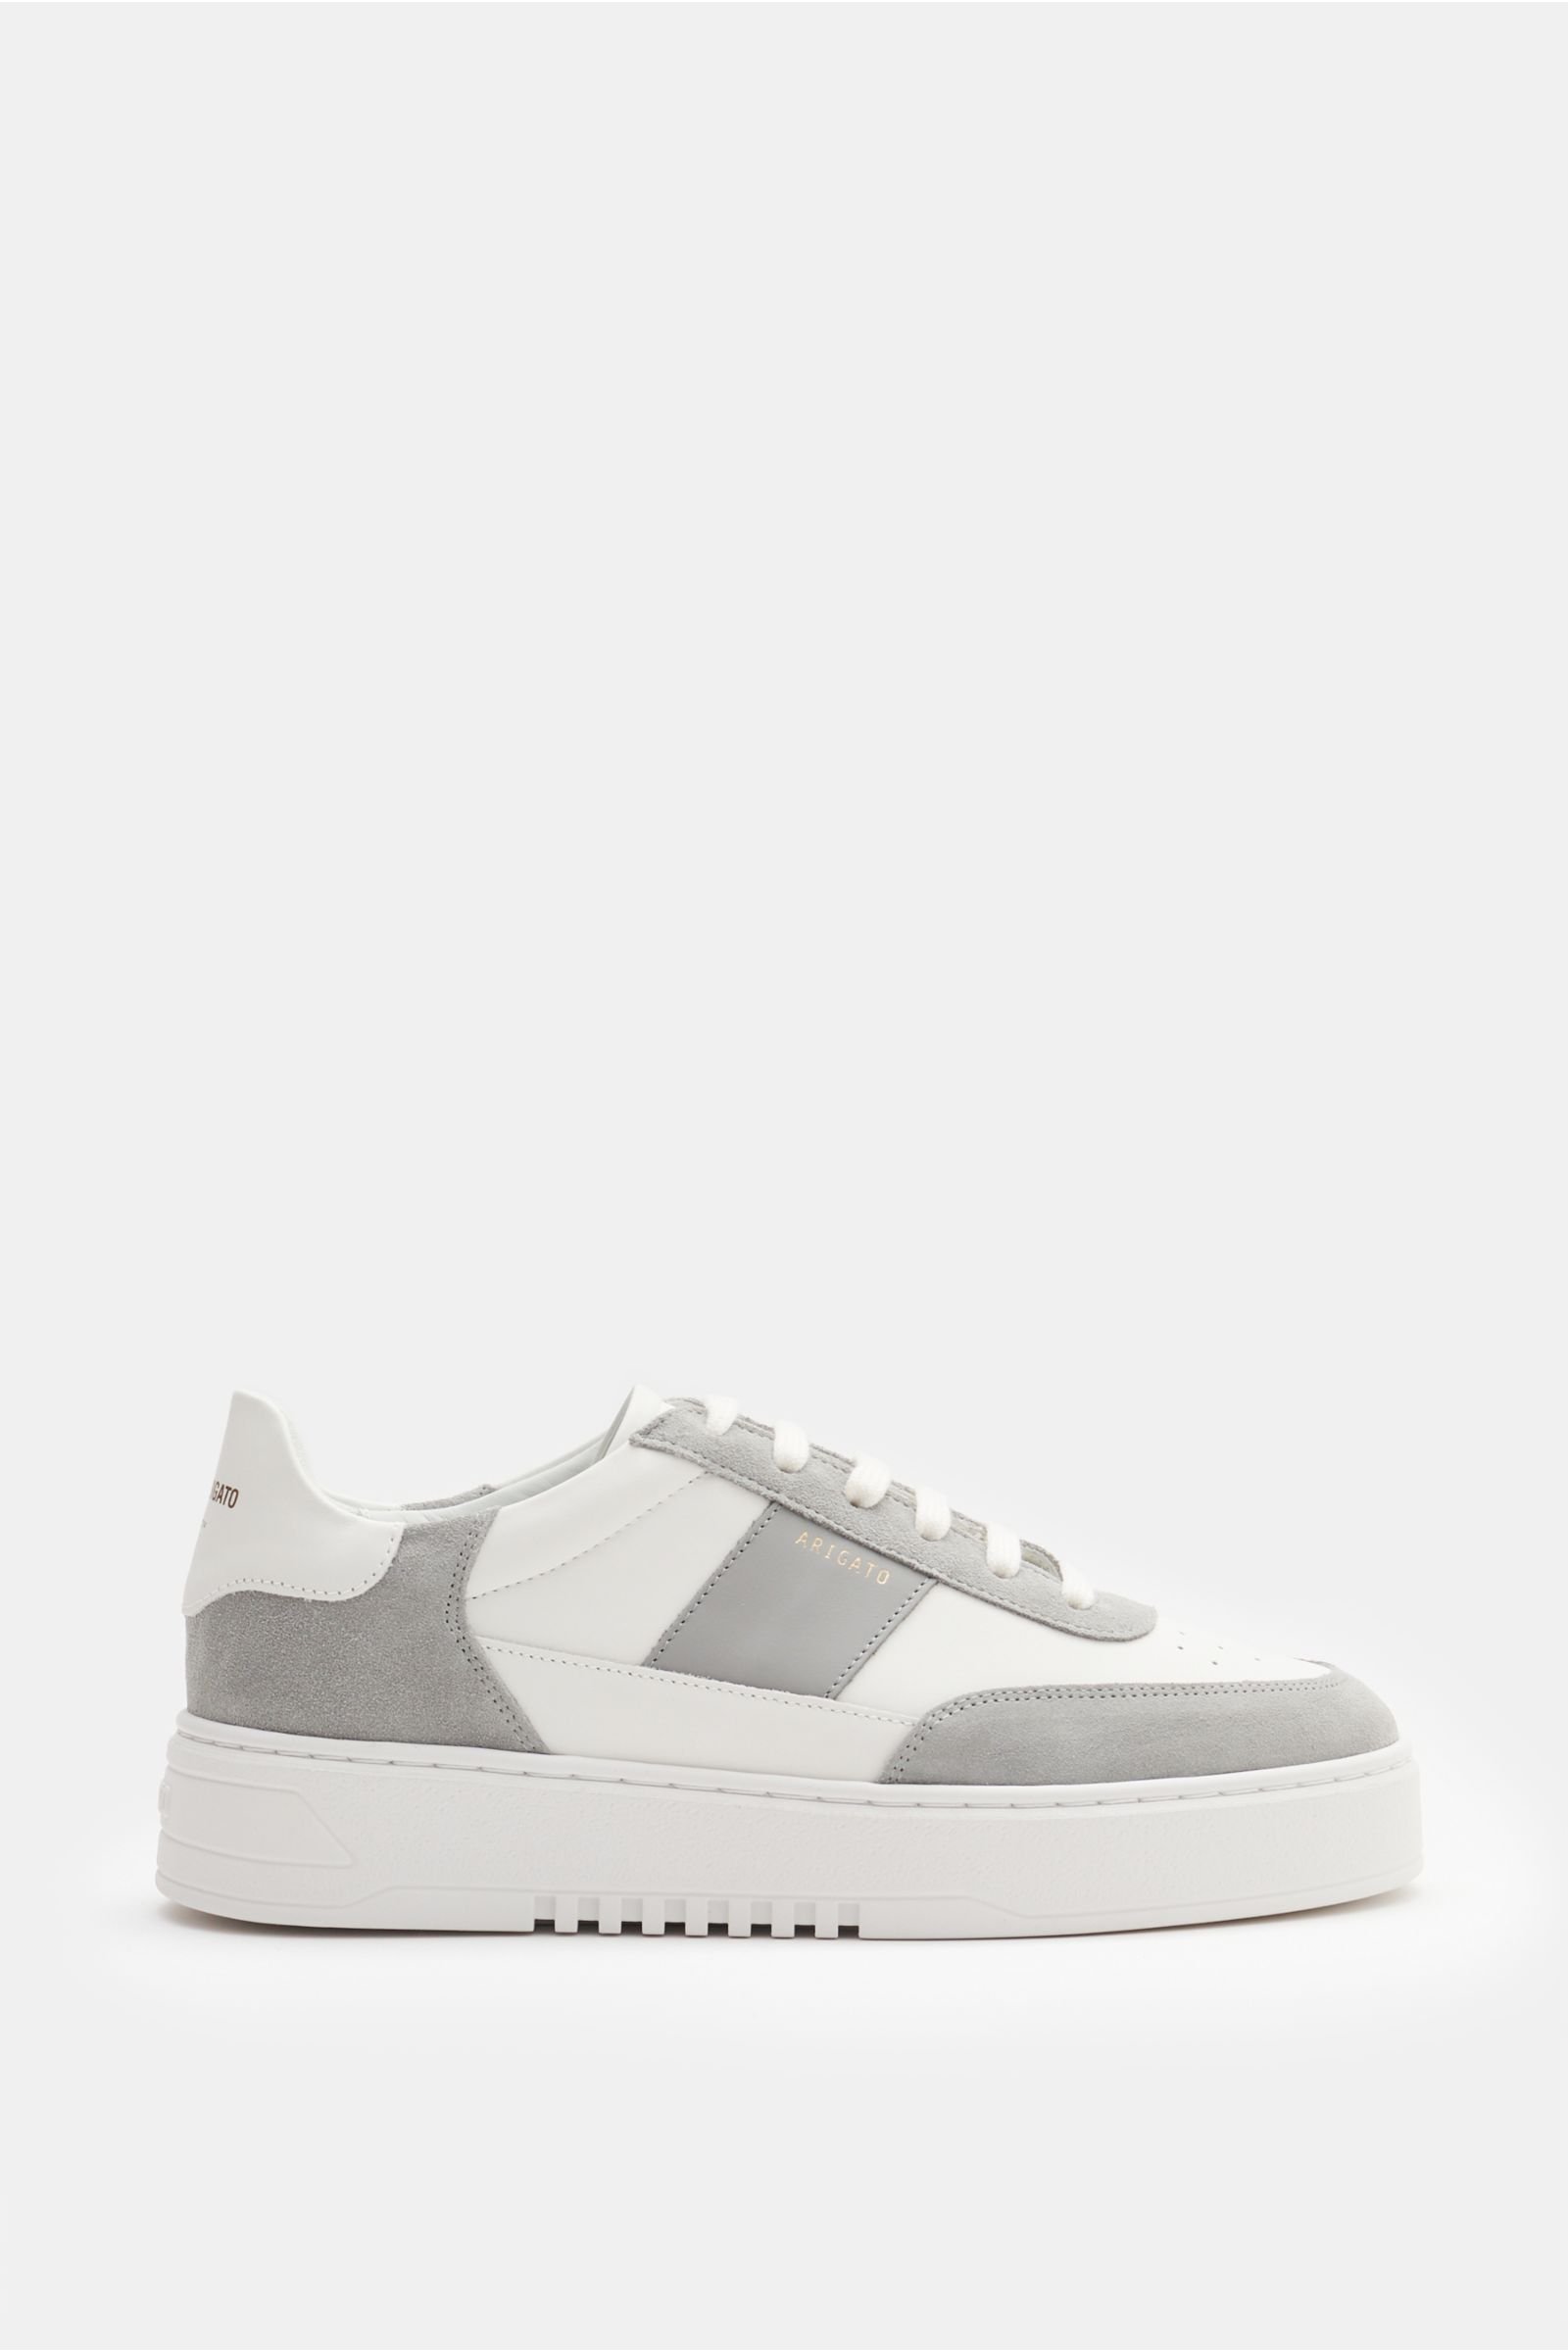 Sneakers 'New Orbit' grey/white